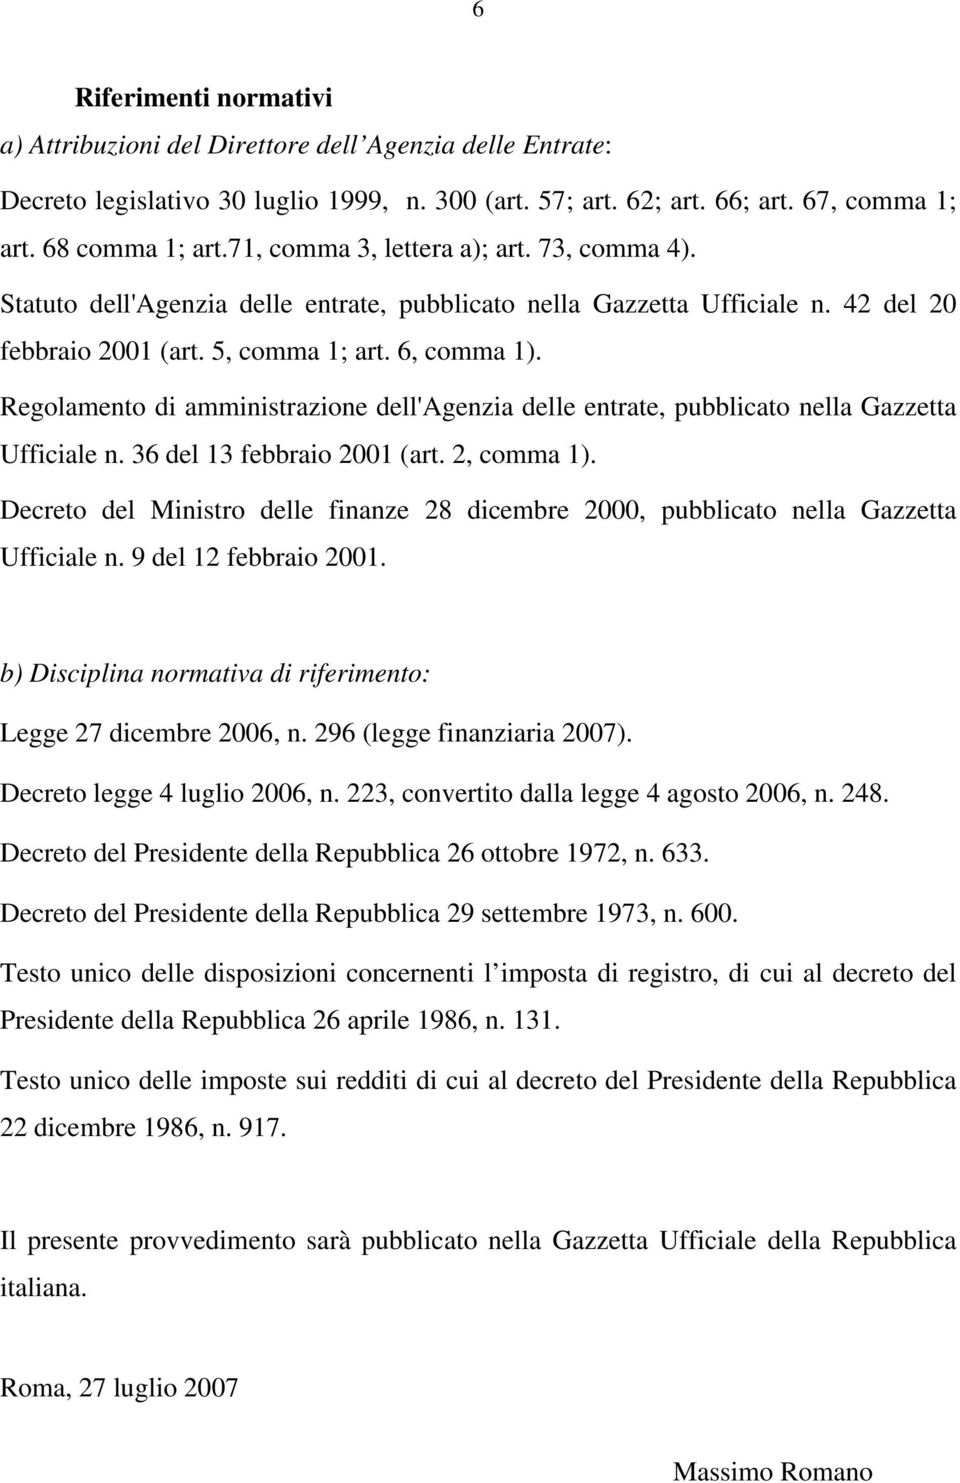 Regolamento di amministrazione dell'agenzia delle entrate, pubblicato nella Gazzetta Ufficiale n. 36 del 13 febbraio 2001 (art. 2, comma 1).